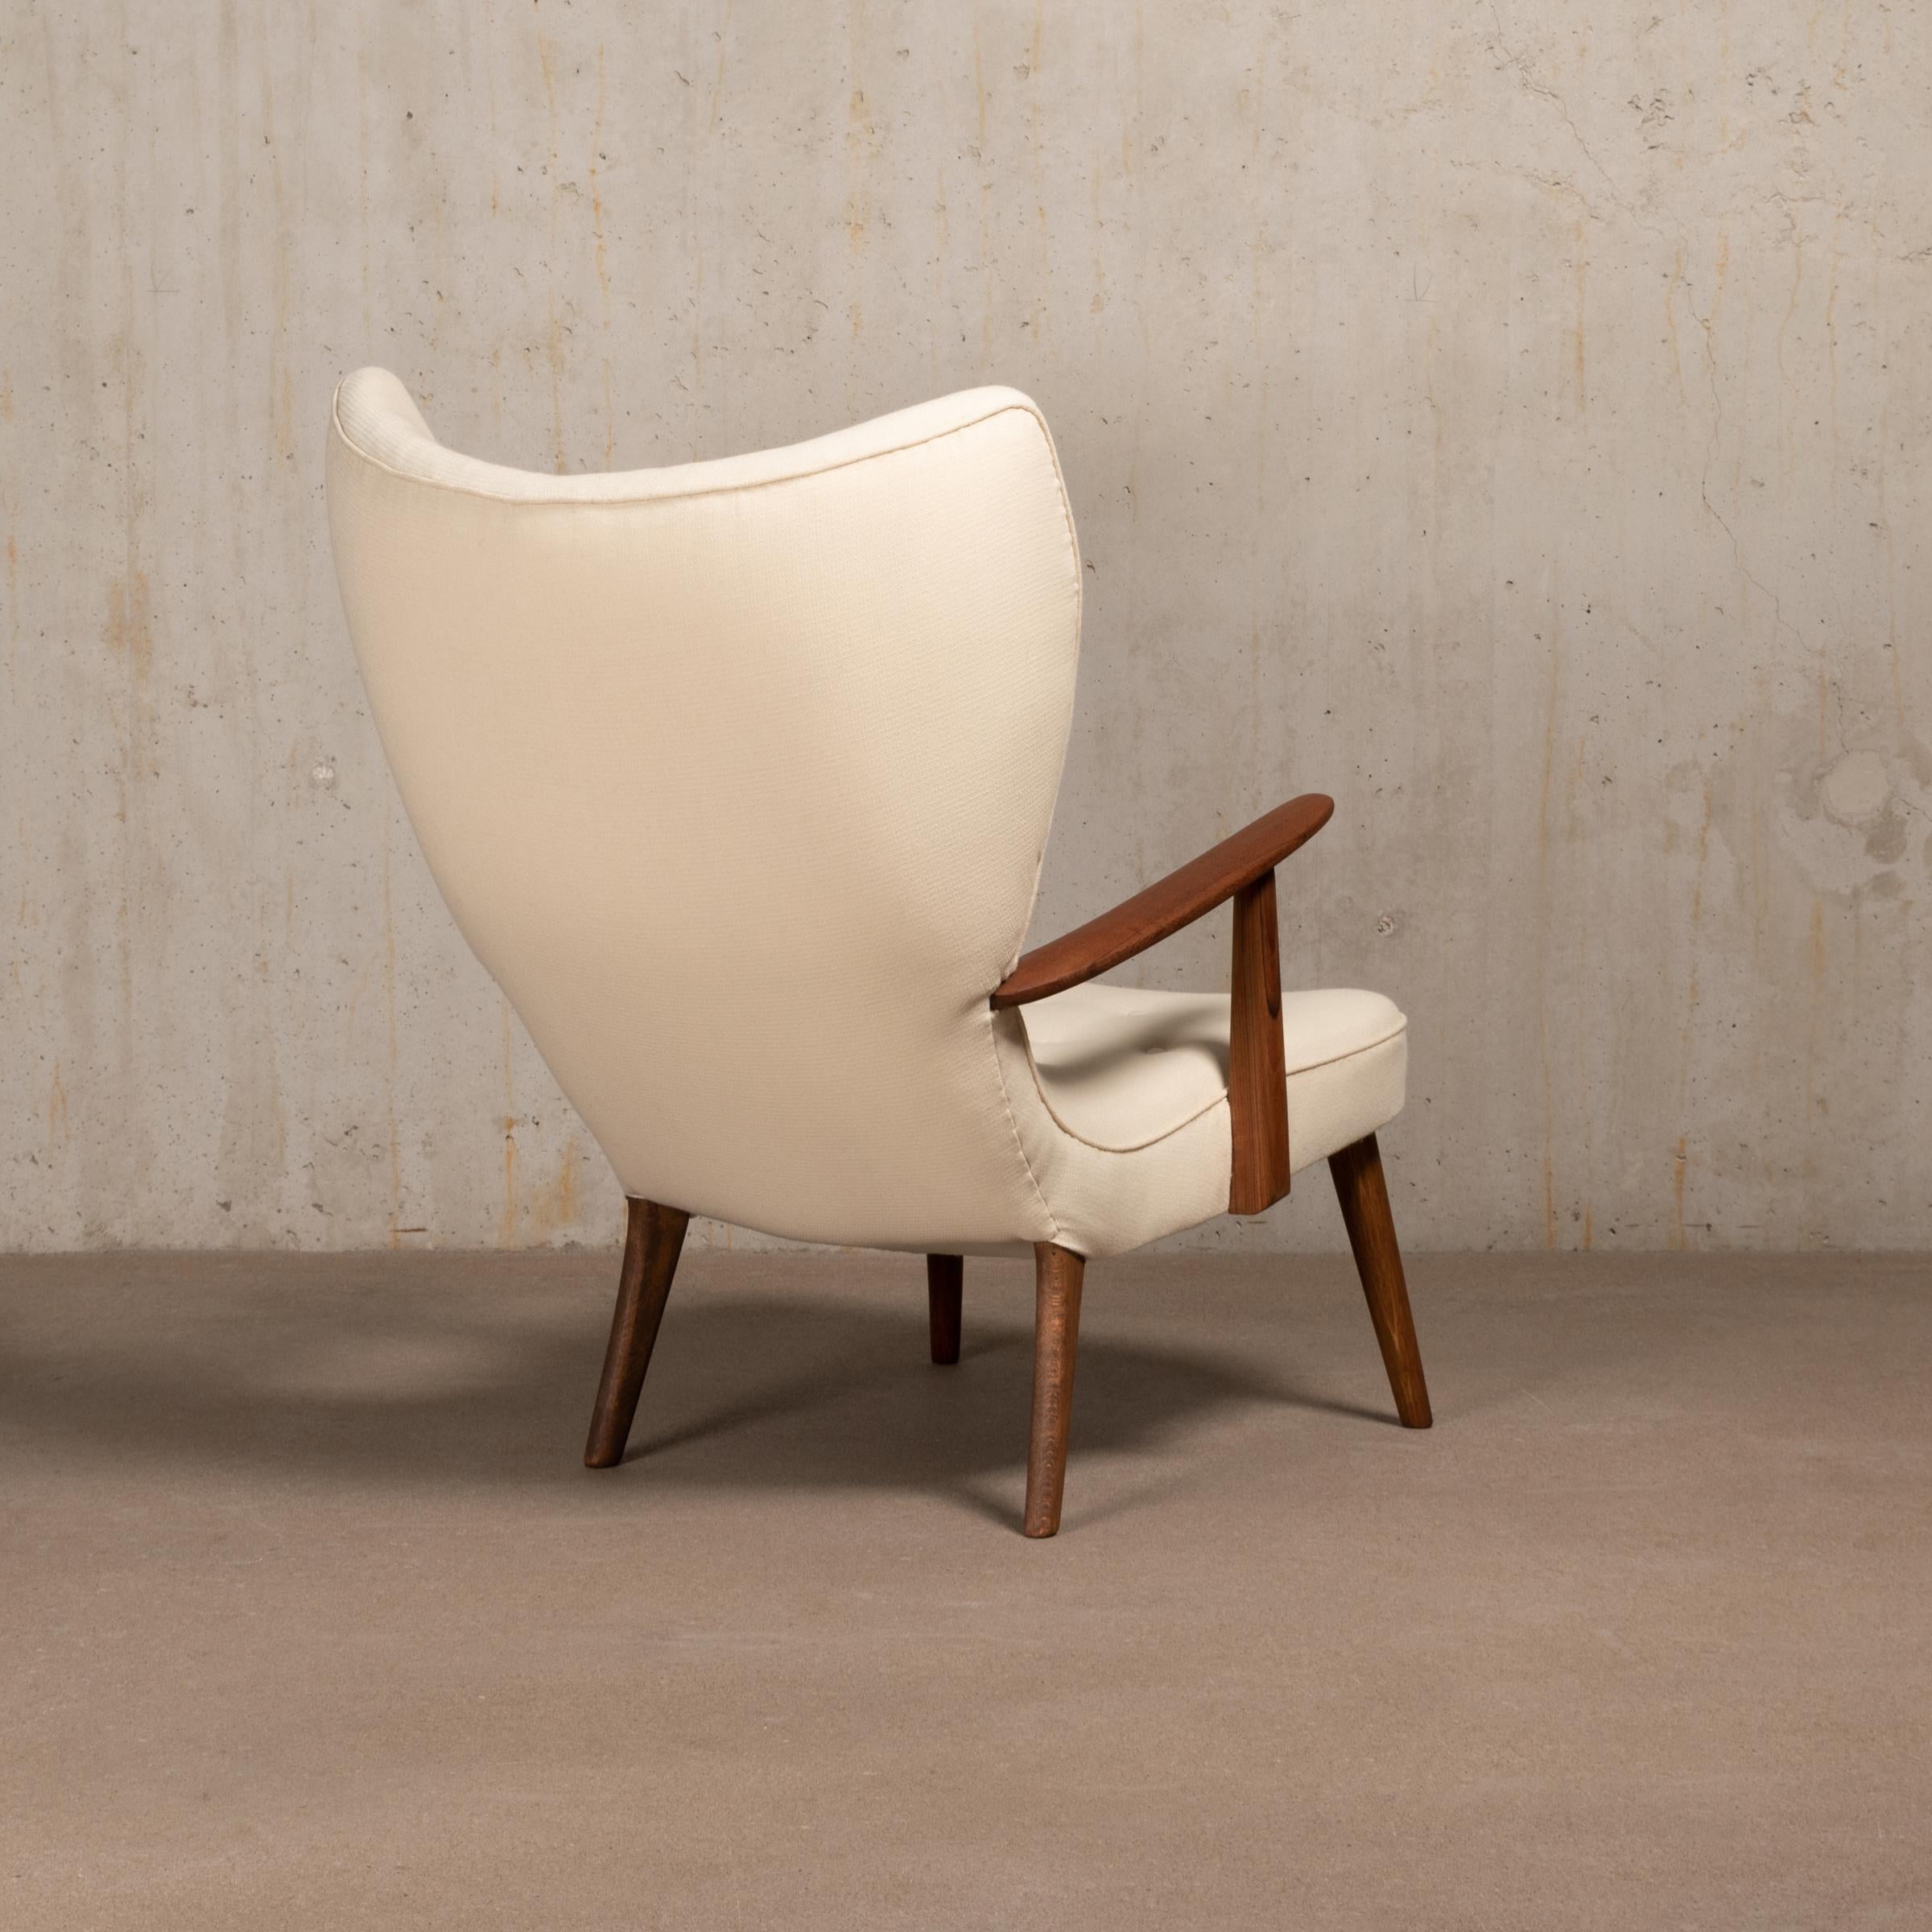 Scandinavian Modern The Prague Chair” by Madsen & Schubell, Denmark